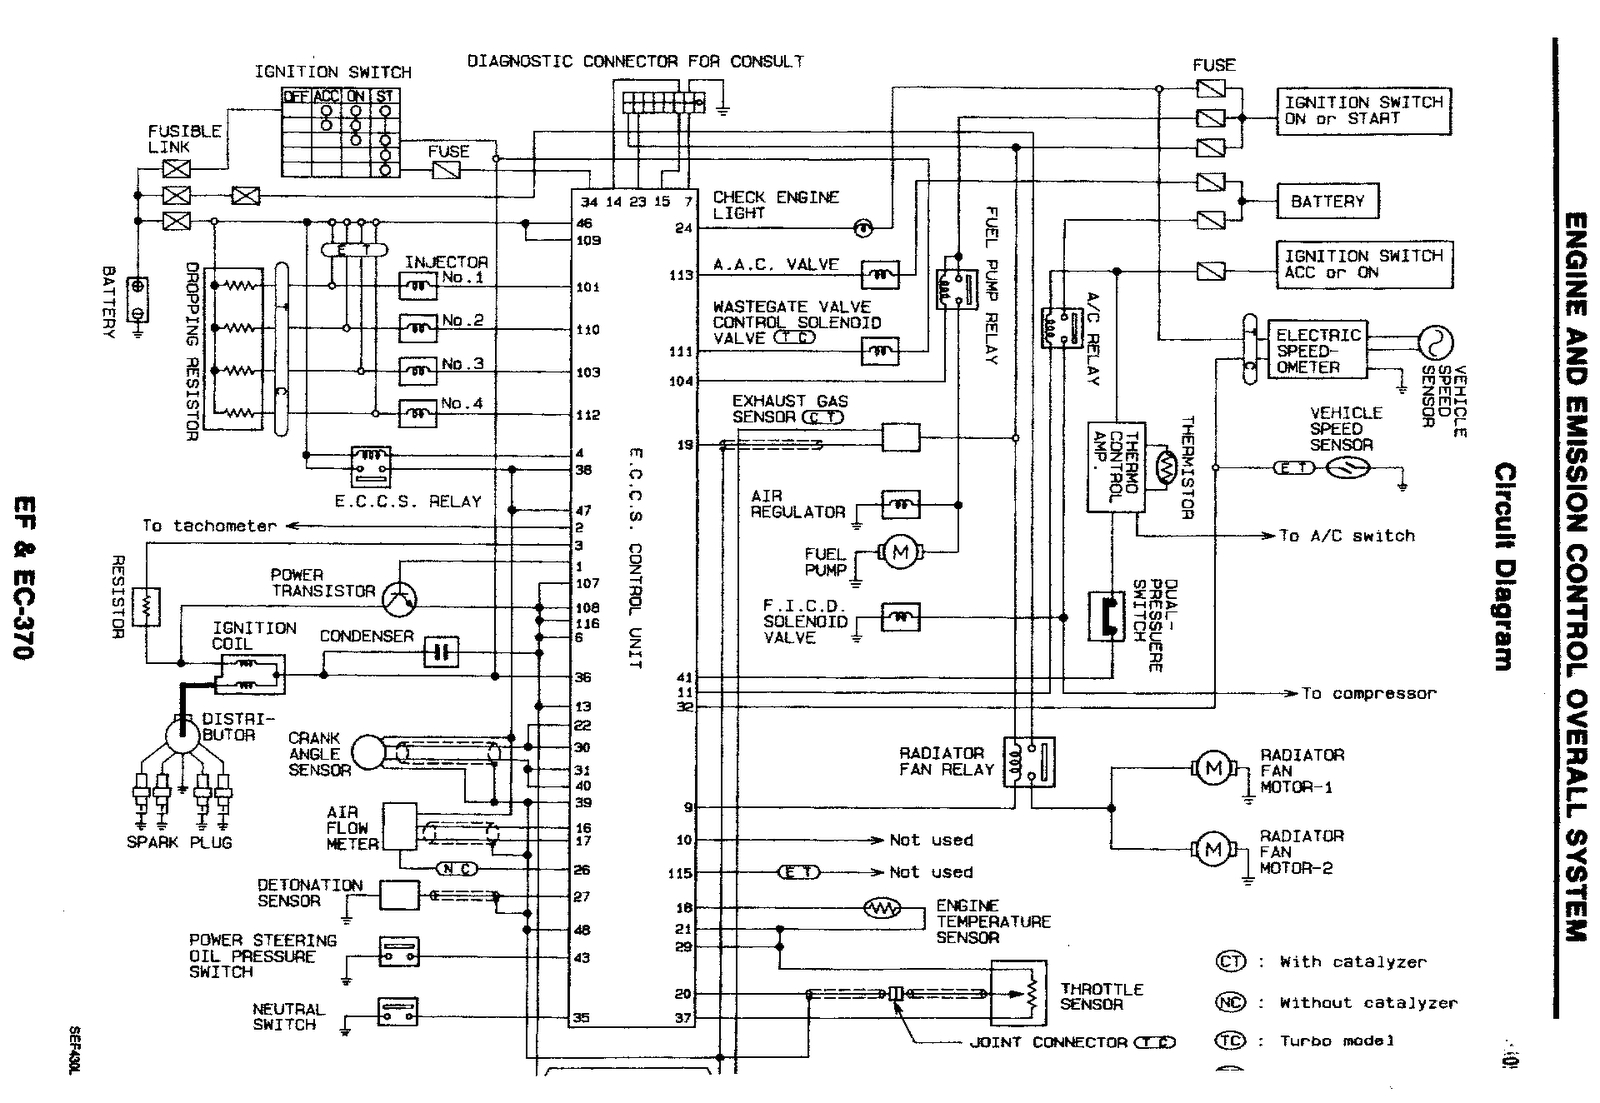 97 audi a4 wiring diagram wiring diagram 1997 audi a4 ignition wiring diagram 97 audi a4 wiring diagram